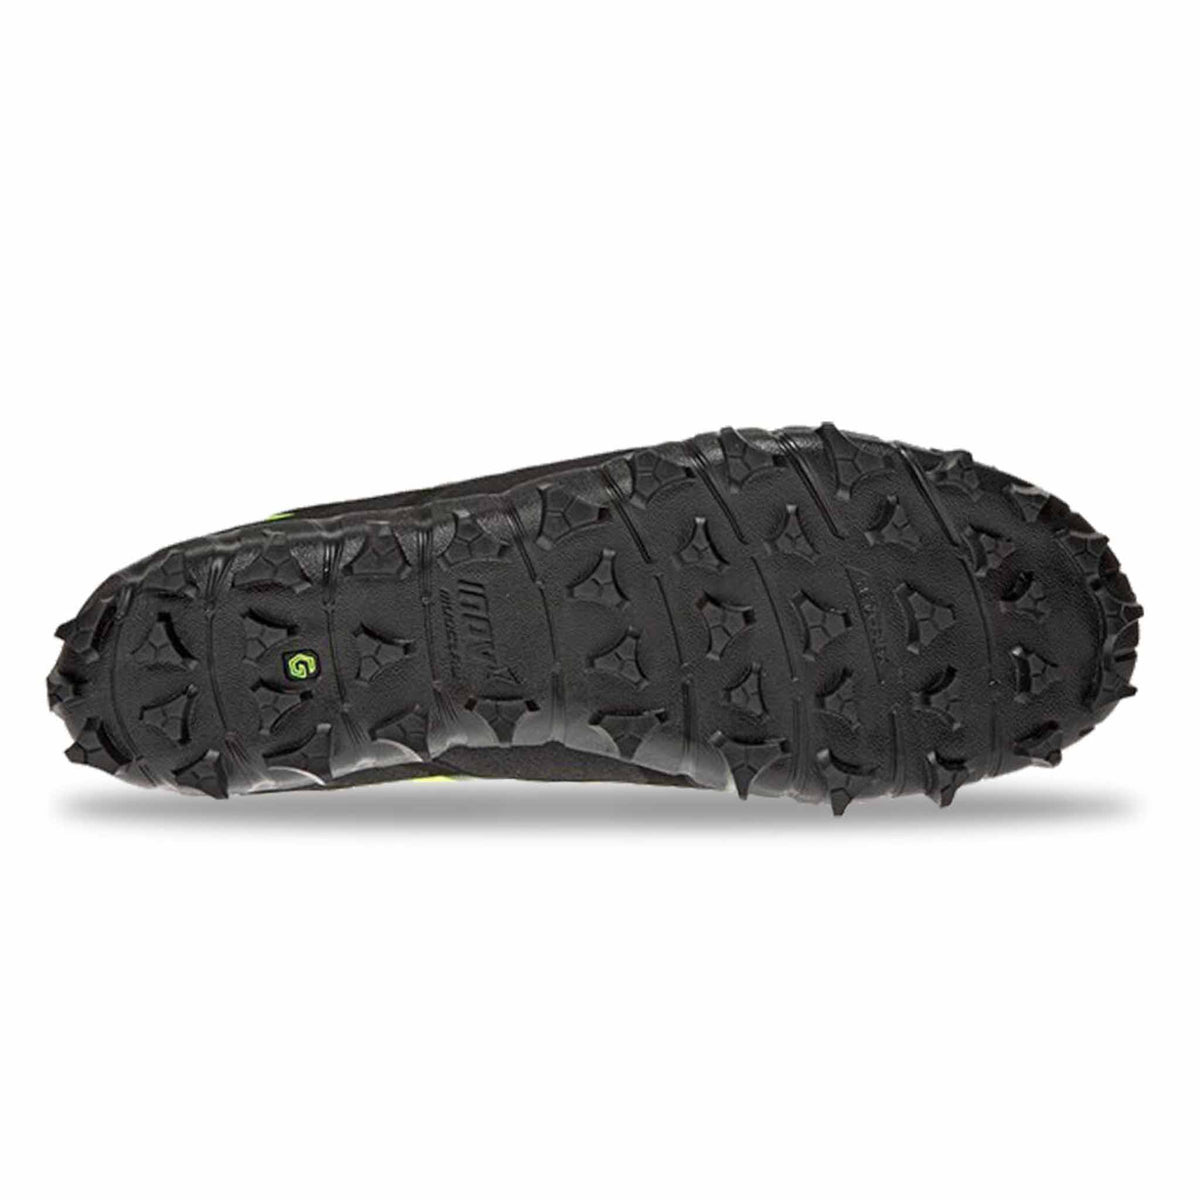 Inov-8 Mudclaw G 260 V2 chaussures de course sur sentier pour homme noir/vert semelle